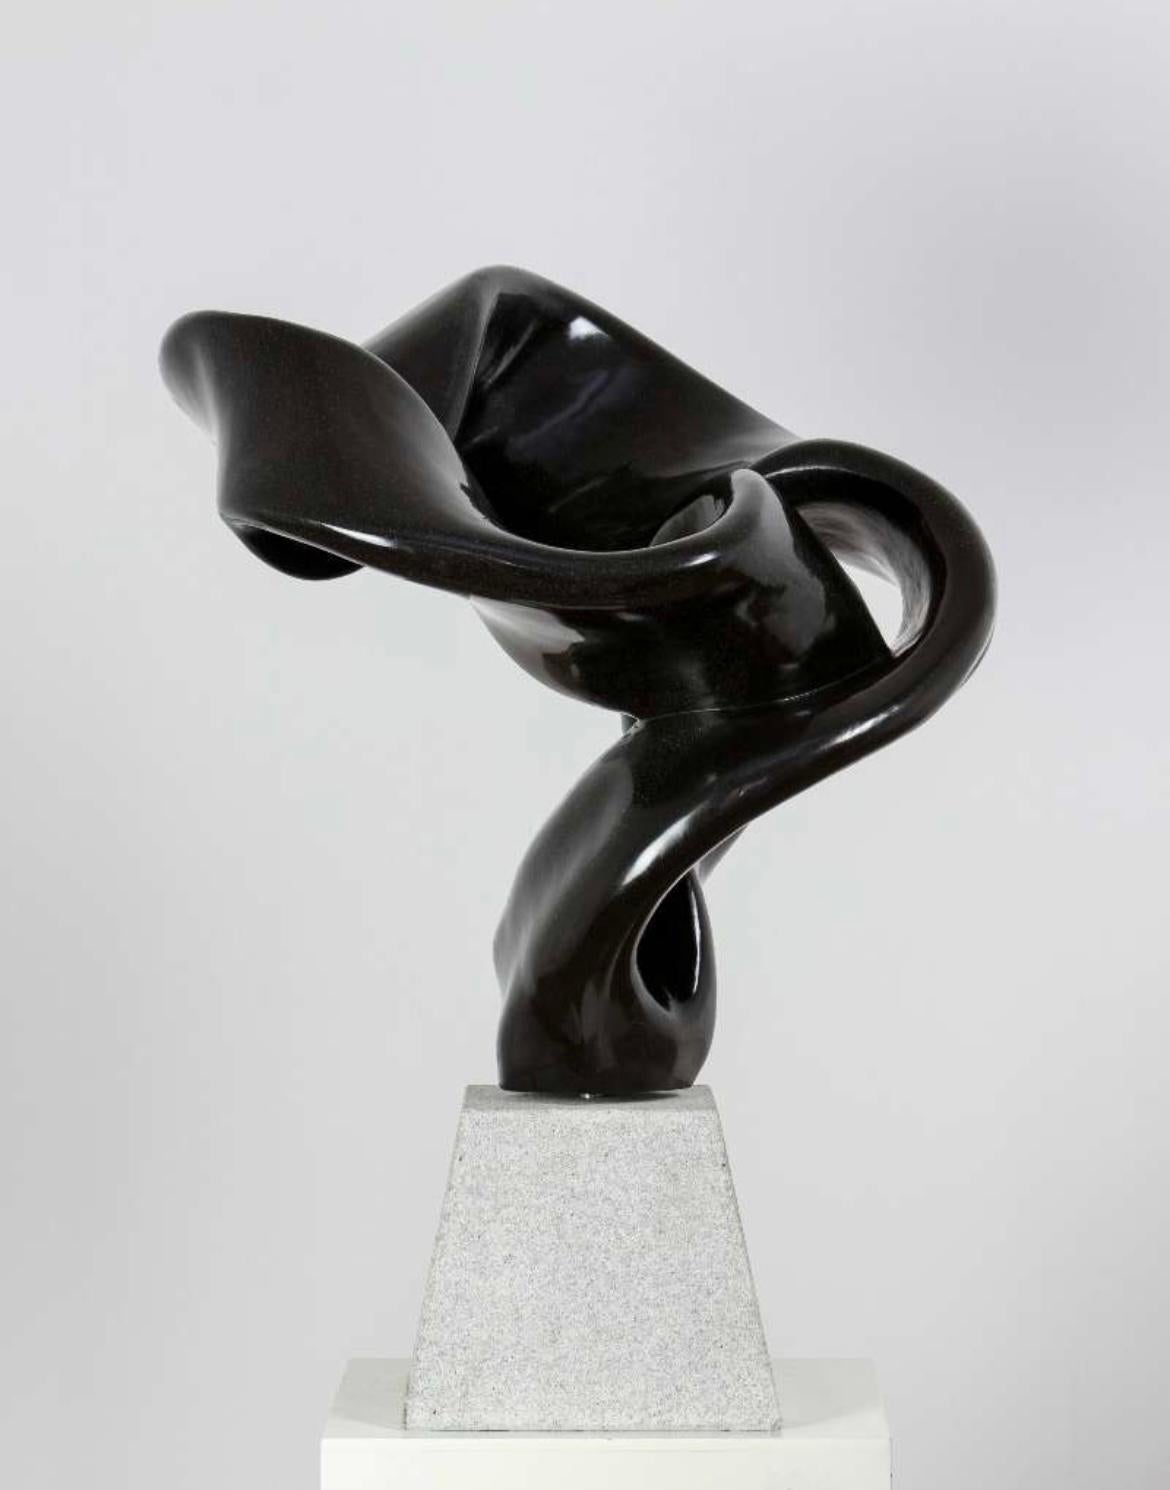 CLOUD Abstrakte Skulptur aus weißem Marmor, 2013 – Sculpture von Hsu Tung Lung